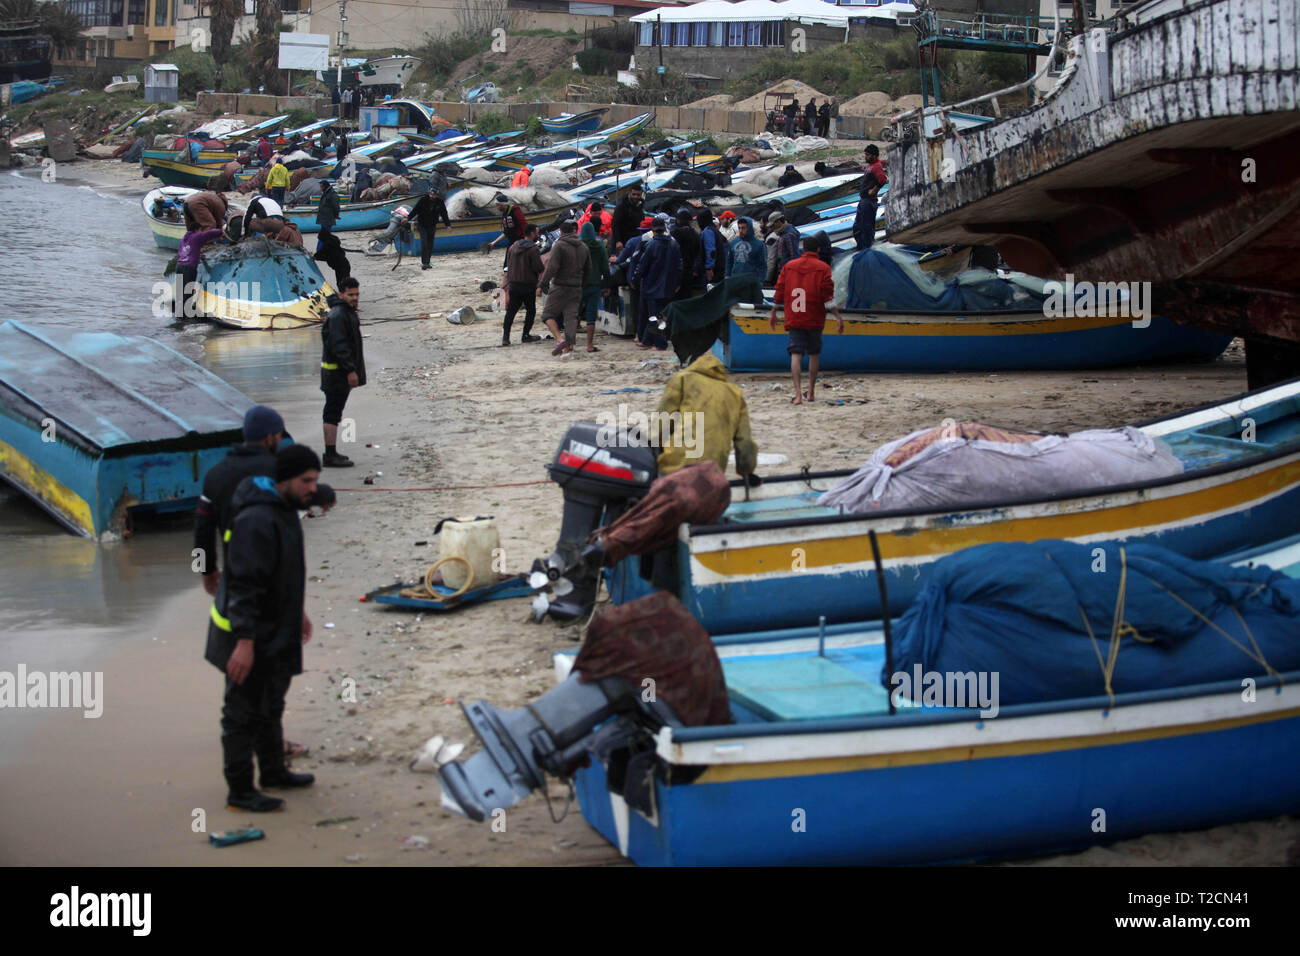 Gaza, Gazastreifen, palästinensischen Gebiet. 1 Apr, 2019. Paletinian fishermern vorbereiten, ihre Boote in Gaza Seaport am 1. April 2019. '' Israel beschlossen, die zulässige Fanggebiet zu 6 Seemeilen im nördlichen Gazastreifen zu erweitern, 12 Meilen im zentralen Gazastreifen und 15 Meilen im südlichen Gazastreifen, bis zu den ägyptischen Seegrenze,'' sagte er: Mahmoud Ajjour/APA-Images/ZUMA Draht/Alamy leben Nachrichten Stockfoto